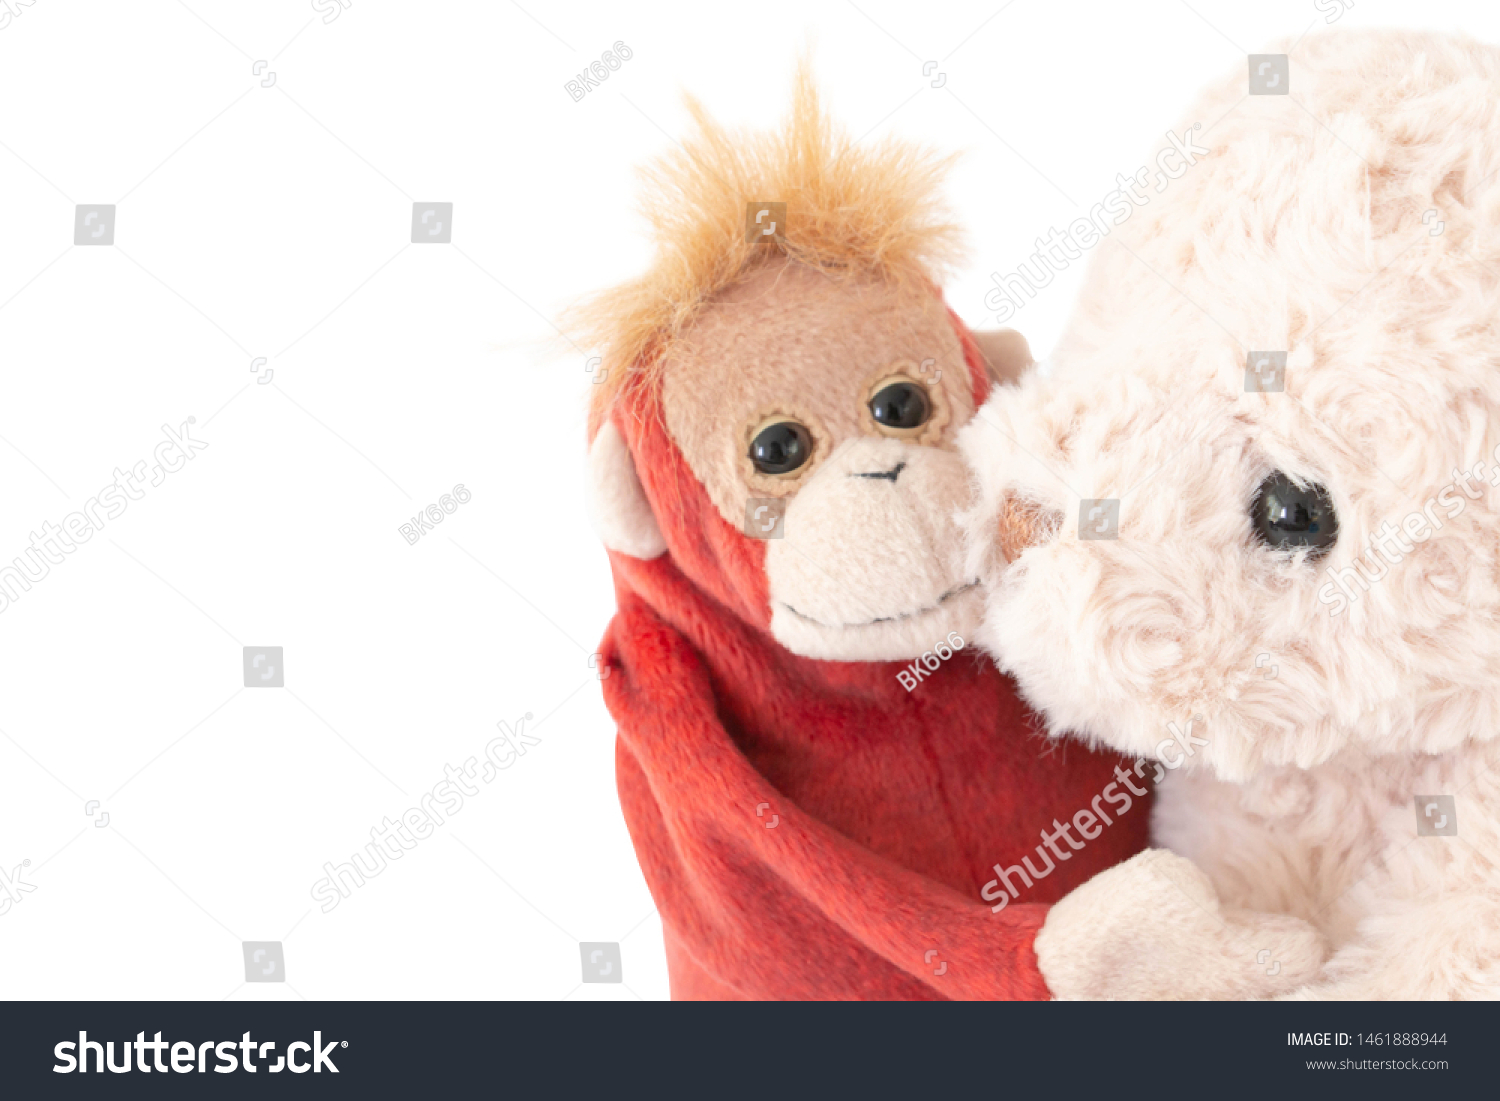 cute monkey teddy